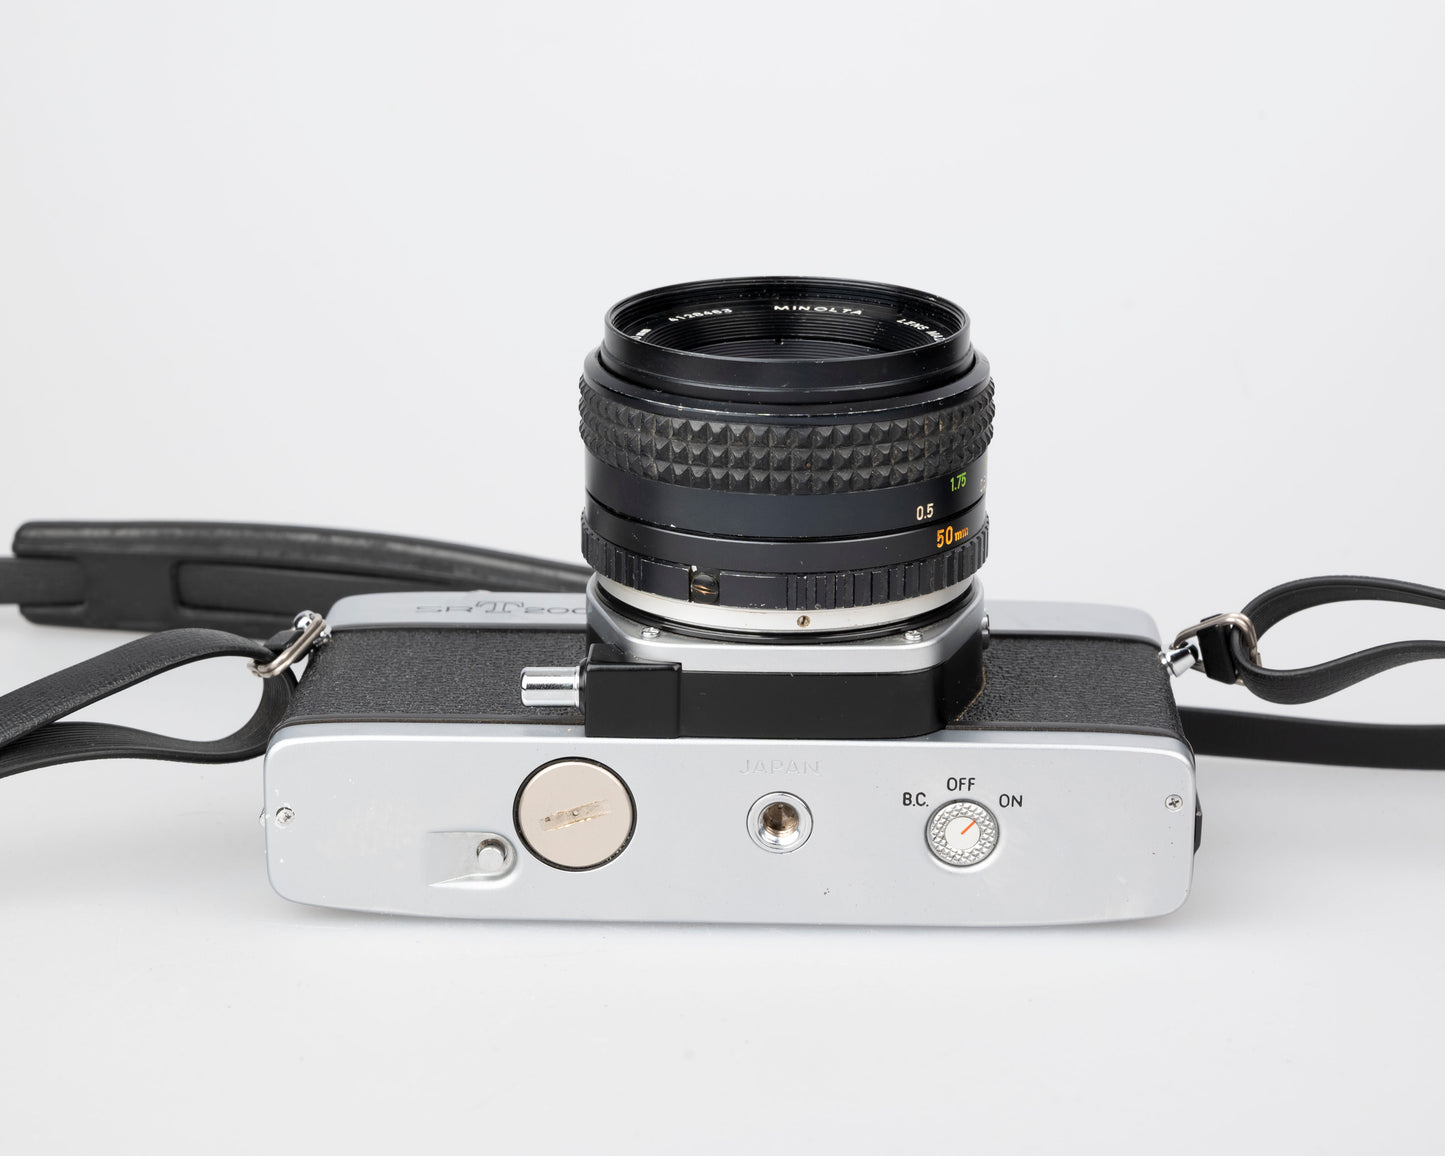 Minolta SRT 200 35mm SLR w/ Rokkor 50mm f1.7 lens + ever-ready case (serial 7527170)